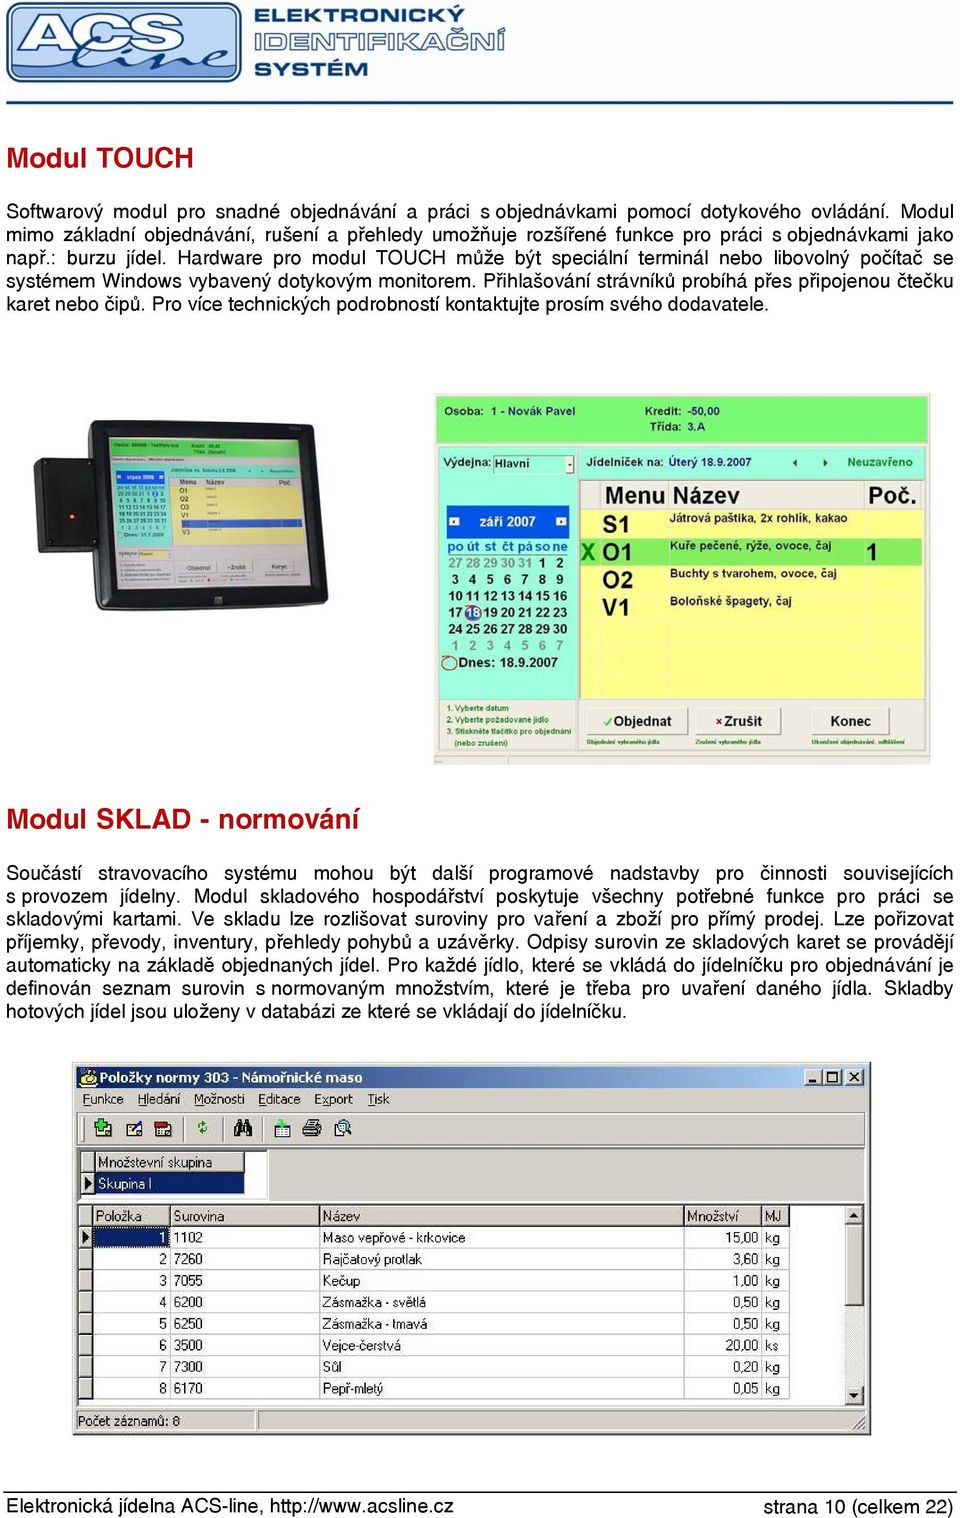 Hardware pro modul TOUCH může být speciální terminál nebo libovolný počítač se systémem Windows vybavený dotykovým monitorem. Přihlašování strávníků probíhá přes připojenou čtečku karet nebo čipů.